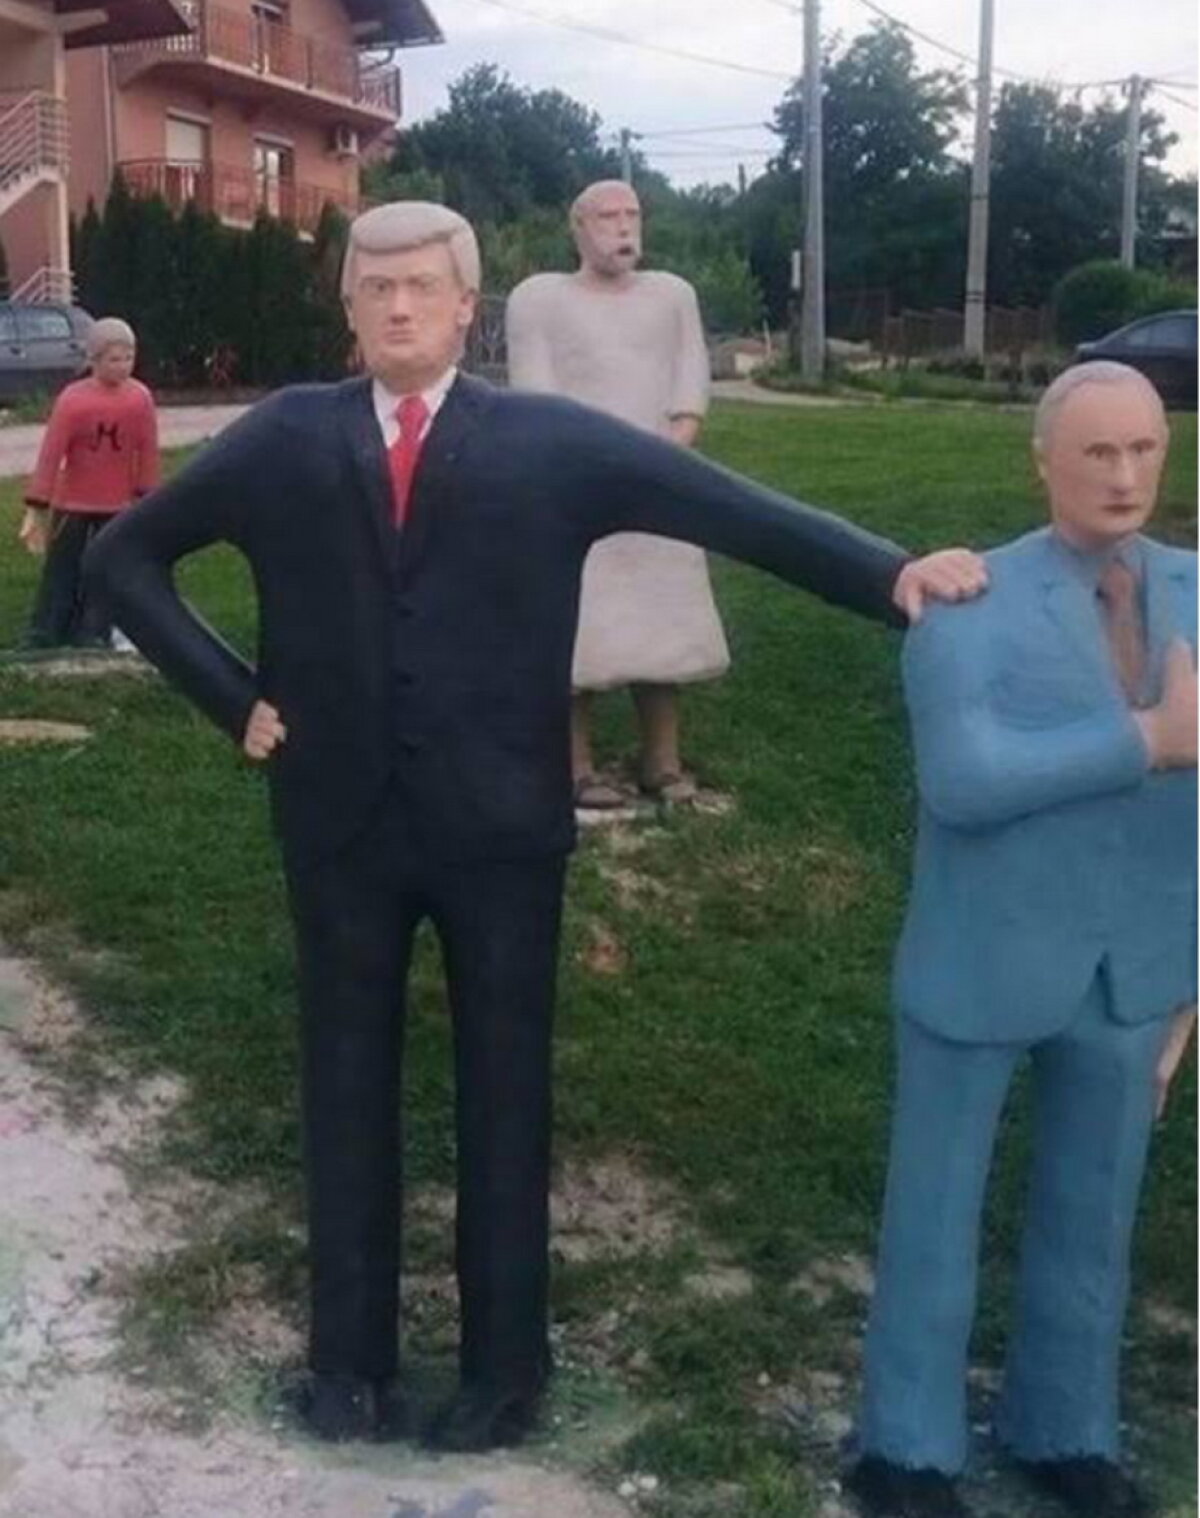 FOTO Melania și Donald Trump au statui la Banja Luka. Vei râde cu lacrimi când le vei vedea!